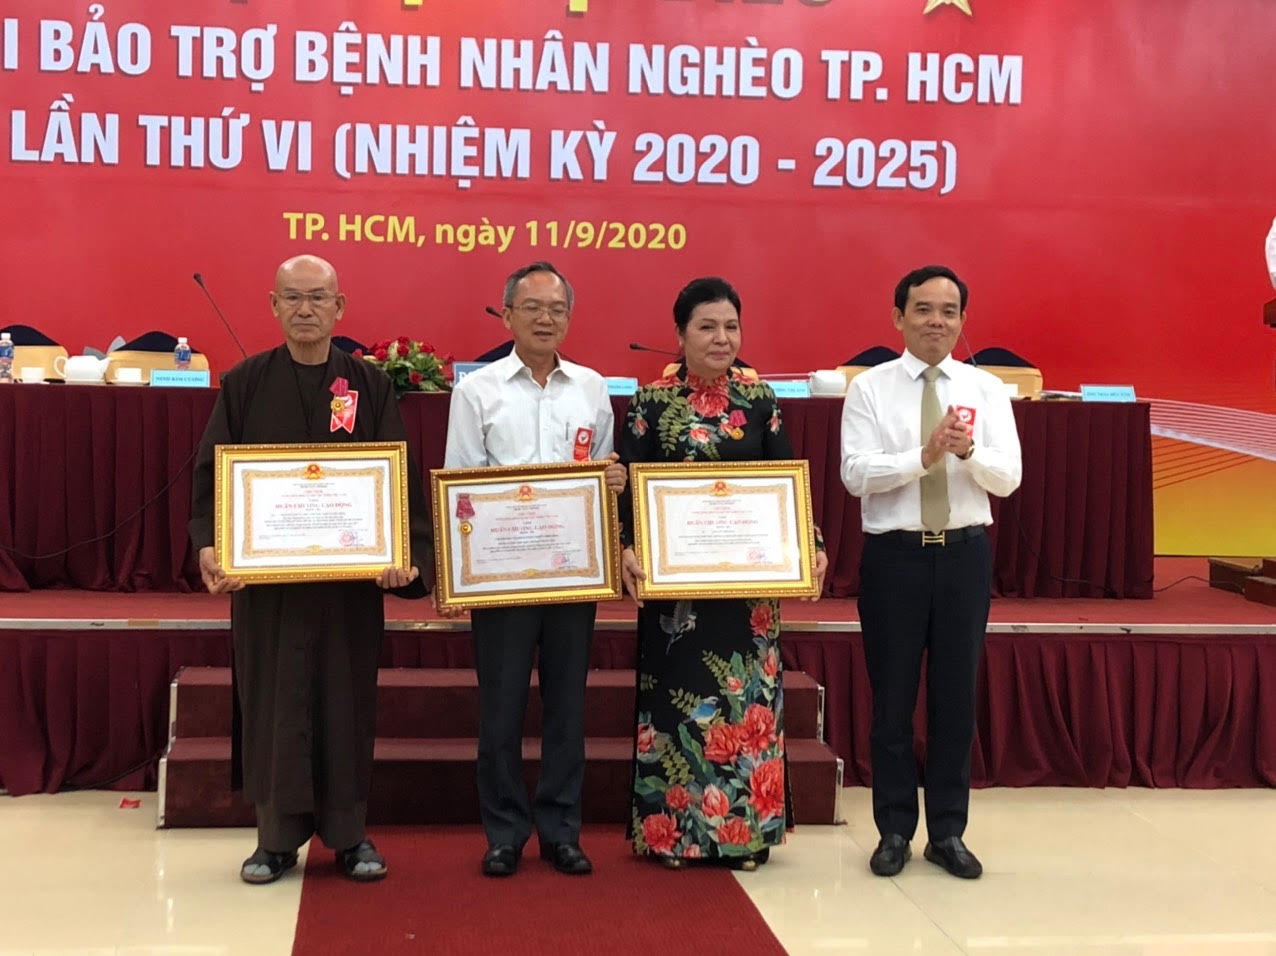 Ông Trần Lưu Quang, Phó Bí thư Thường trực Thành uỷ TP.HCM trao Huân chương Lao động hạng III cho HT.Thích Châu Viên (bìa trái) và các cá nhân, tập thể khác